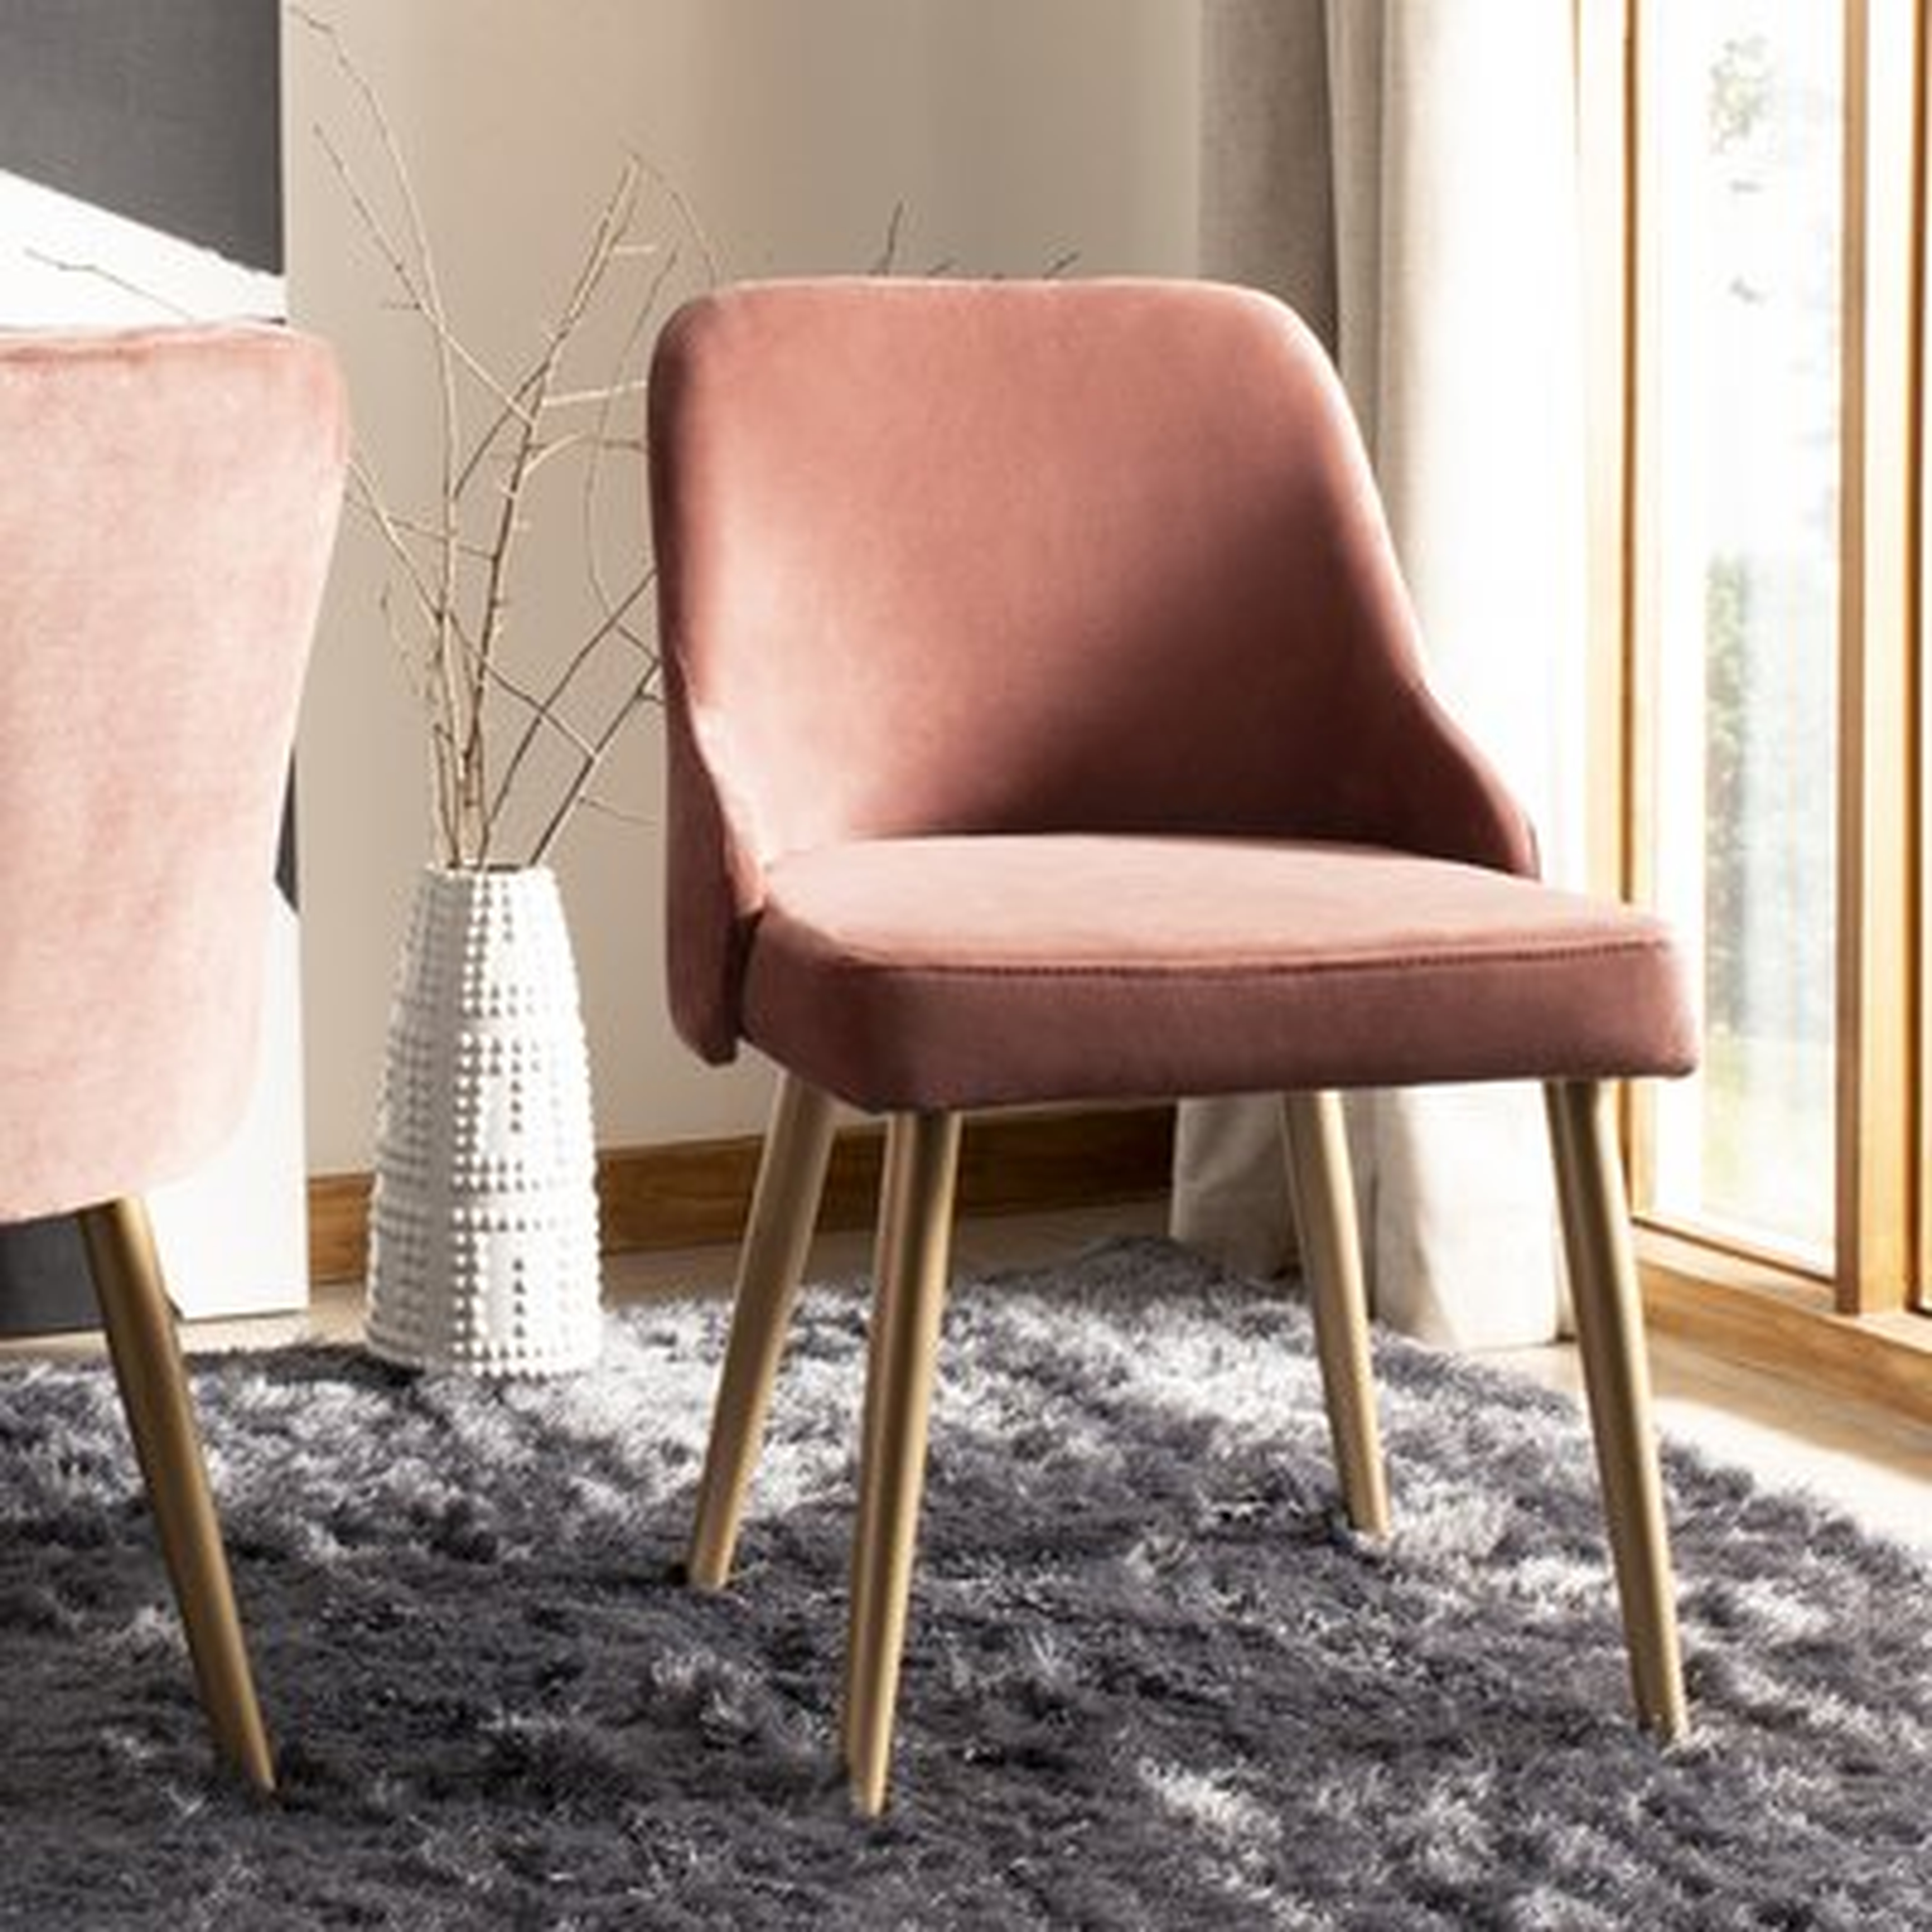 Dinwiddie Upholstered Dining Chair - pink- set of 2 - Wayfair